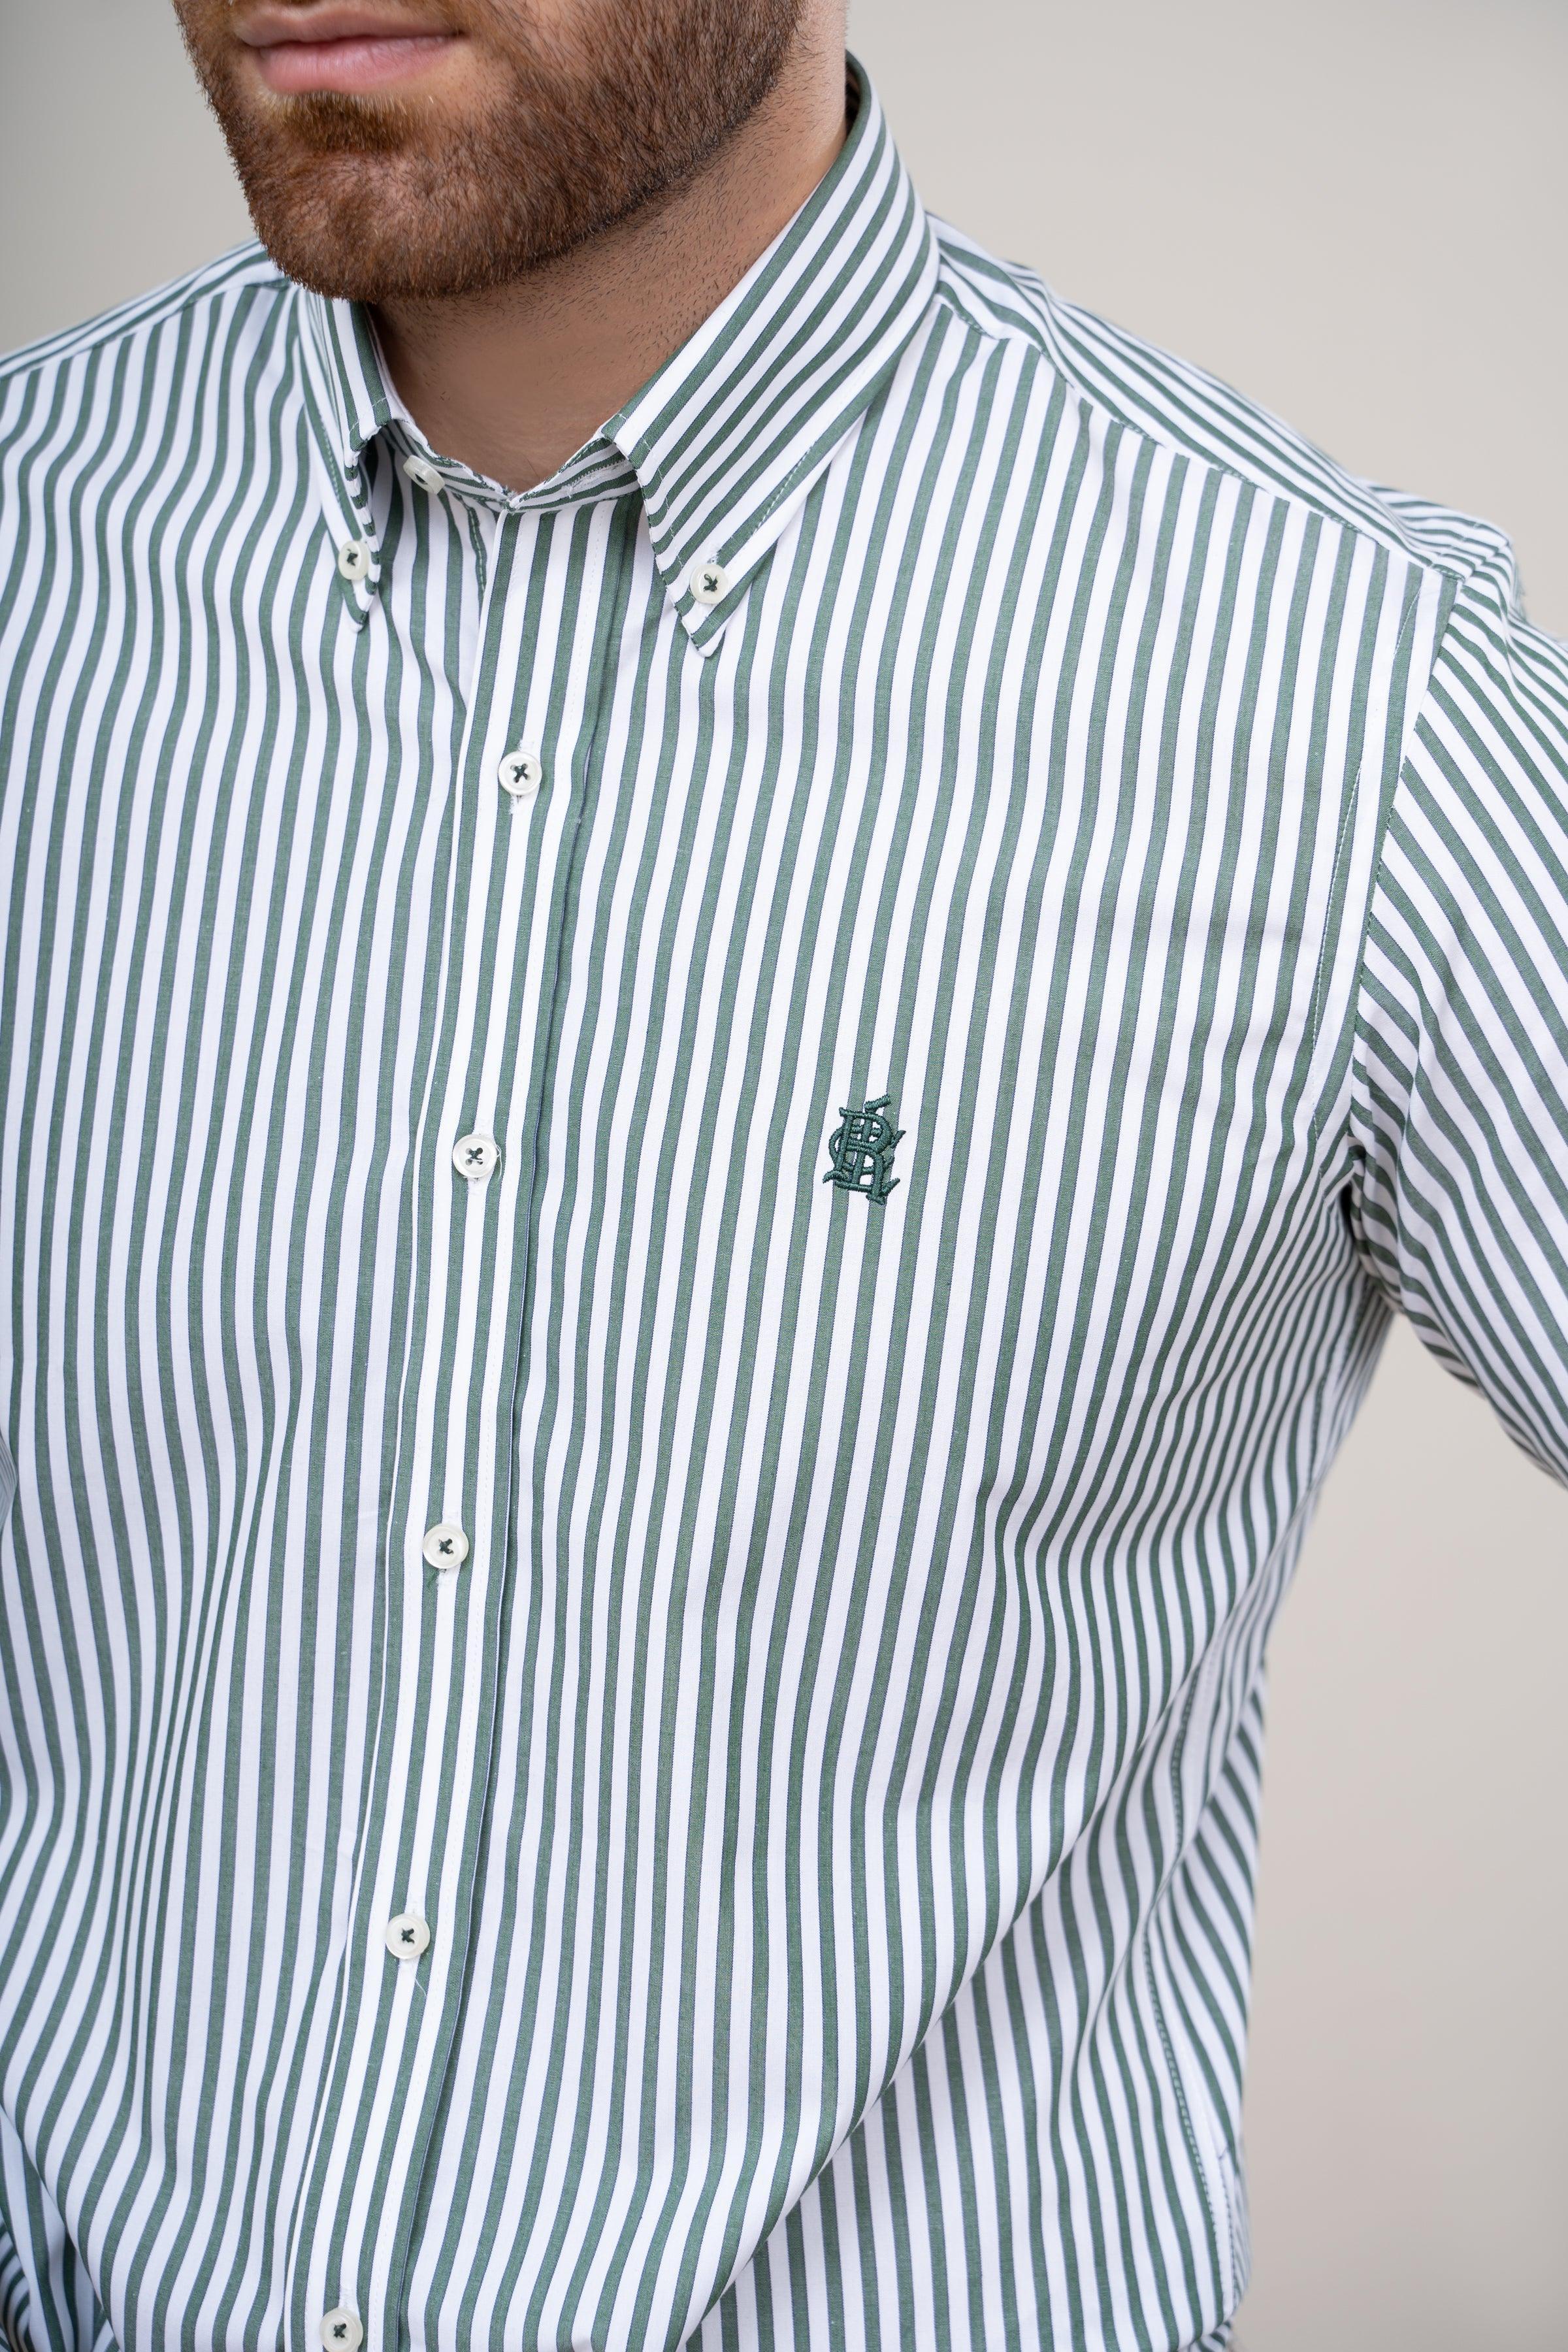 SEMI FORMAL SHIRT GREEN WHITE at Charcoal Clothing